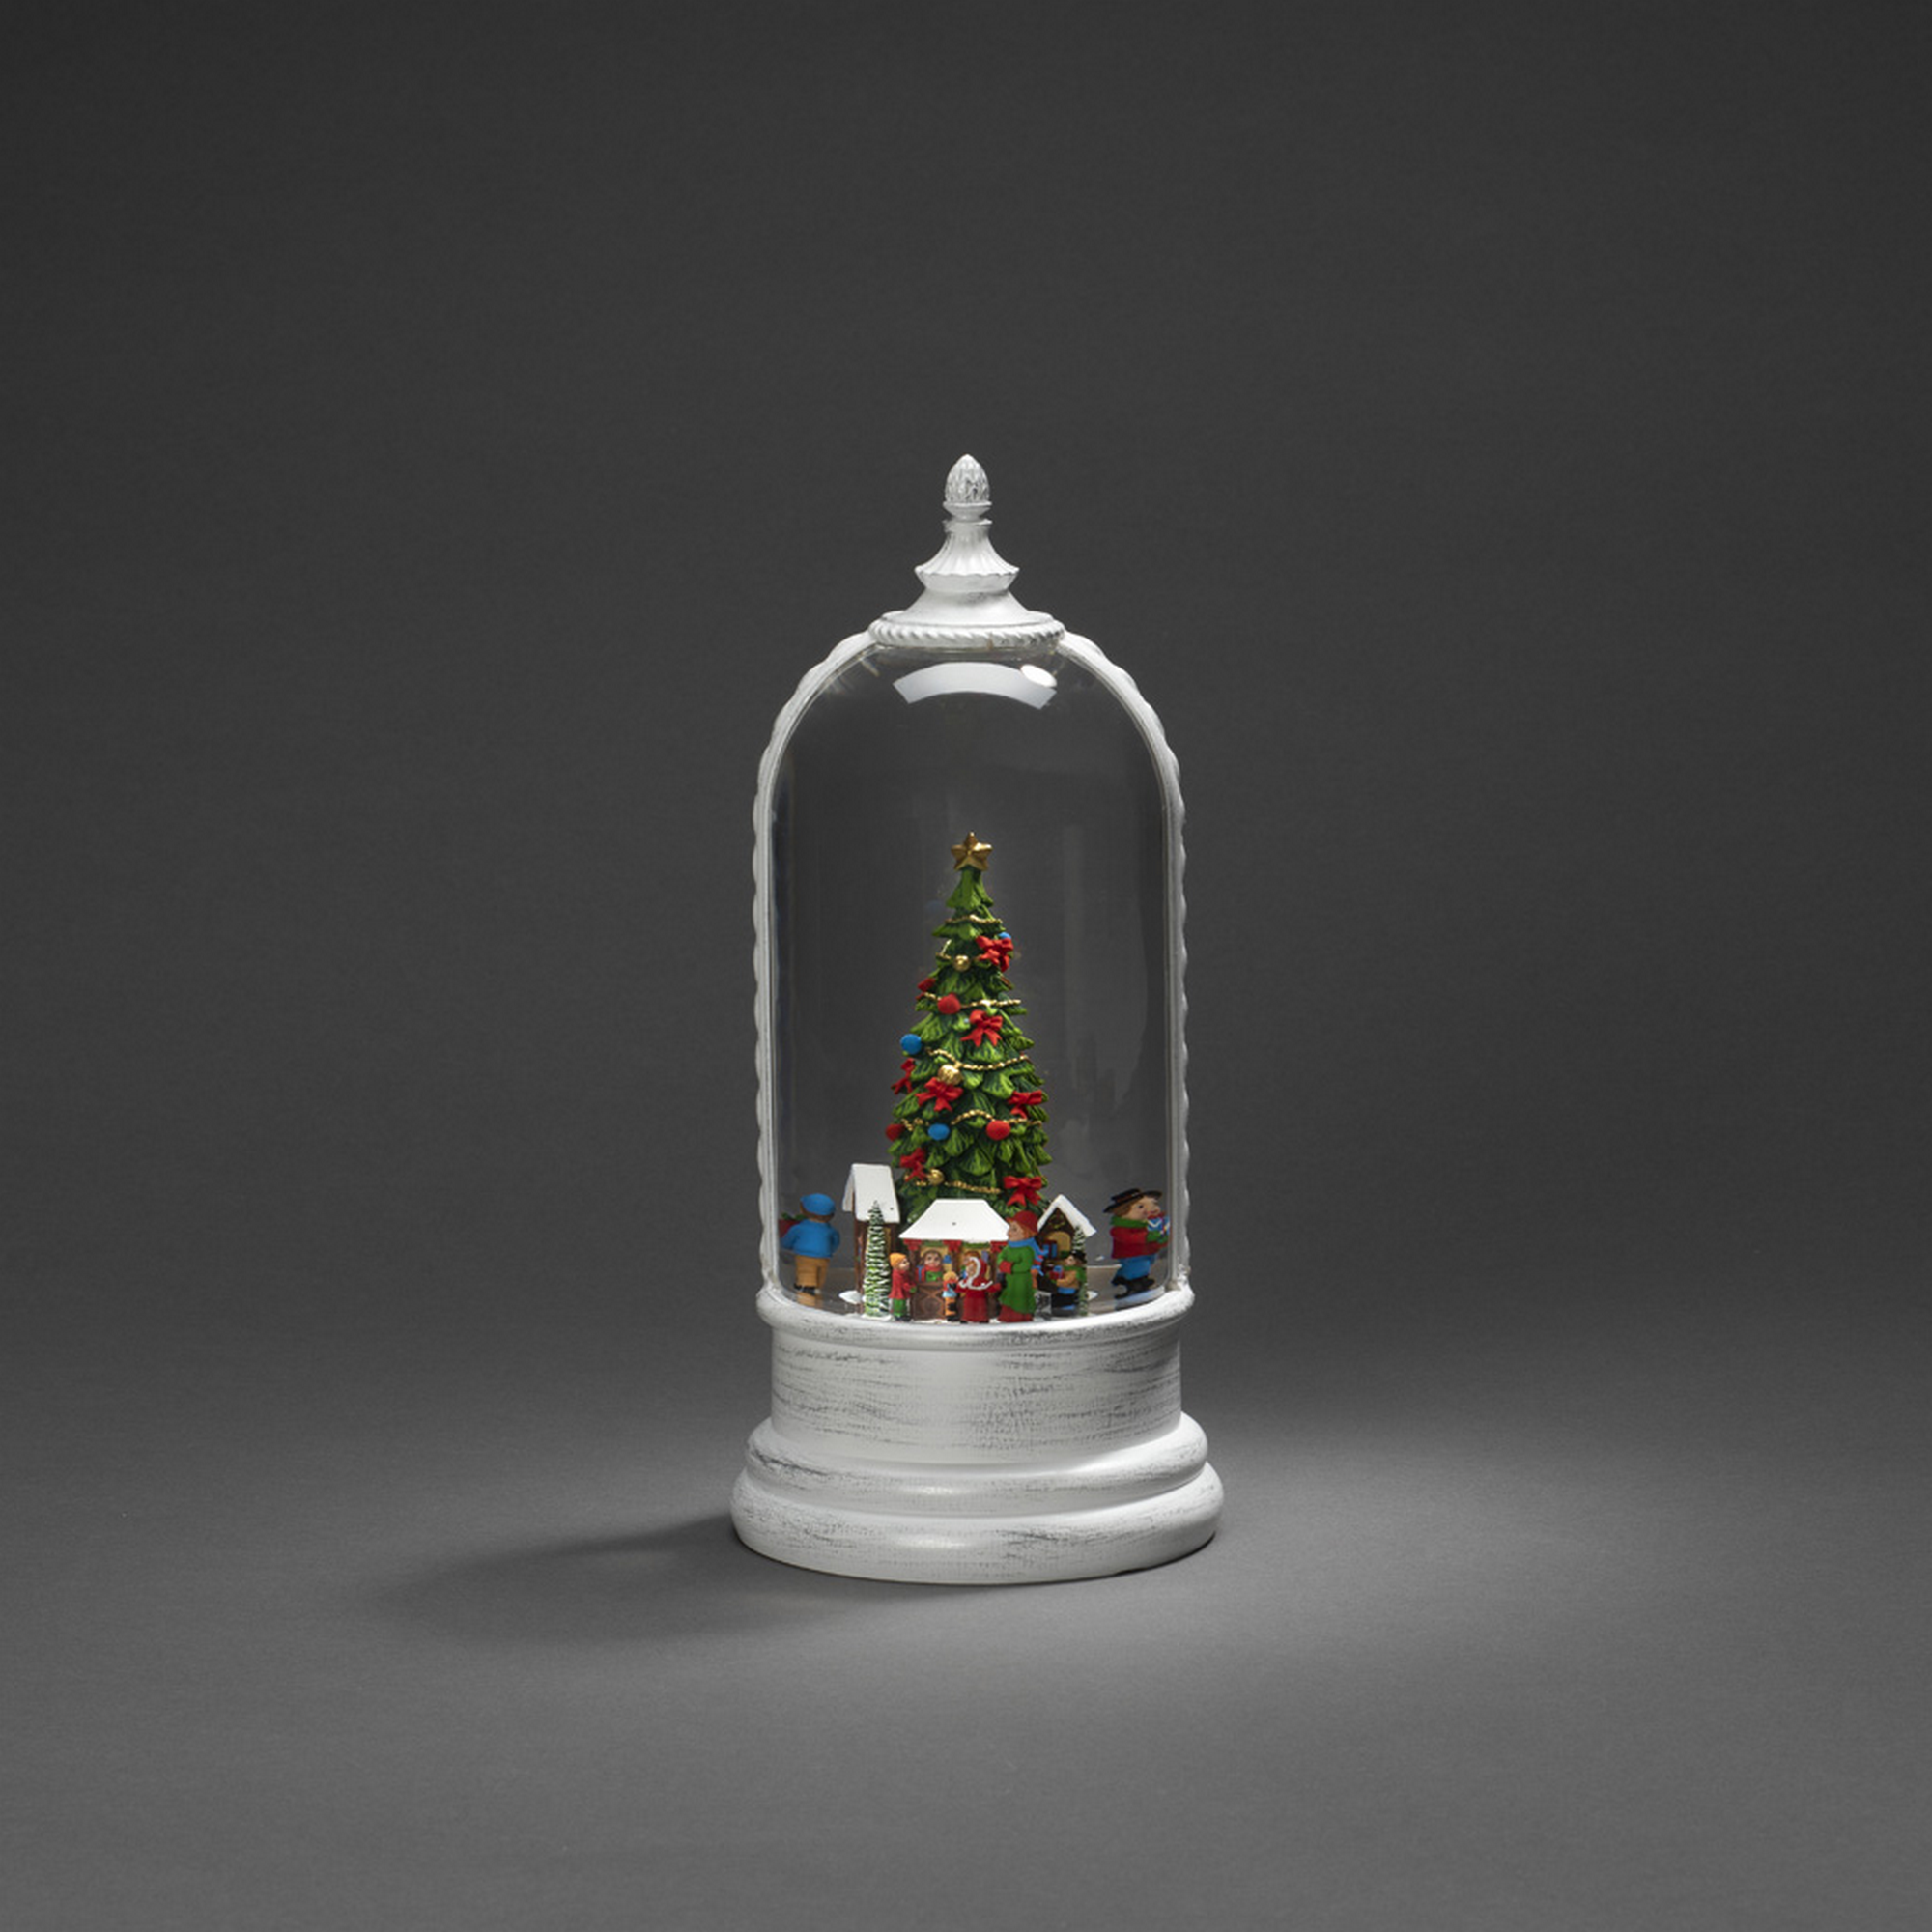 LED-Wasserlaterne 'Deutscher Weihnachtsmarkt' 1 LED warmweiß Ø 12,5 x 27 cm + product picture